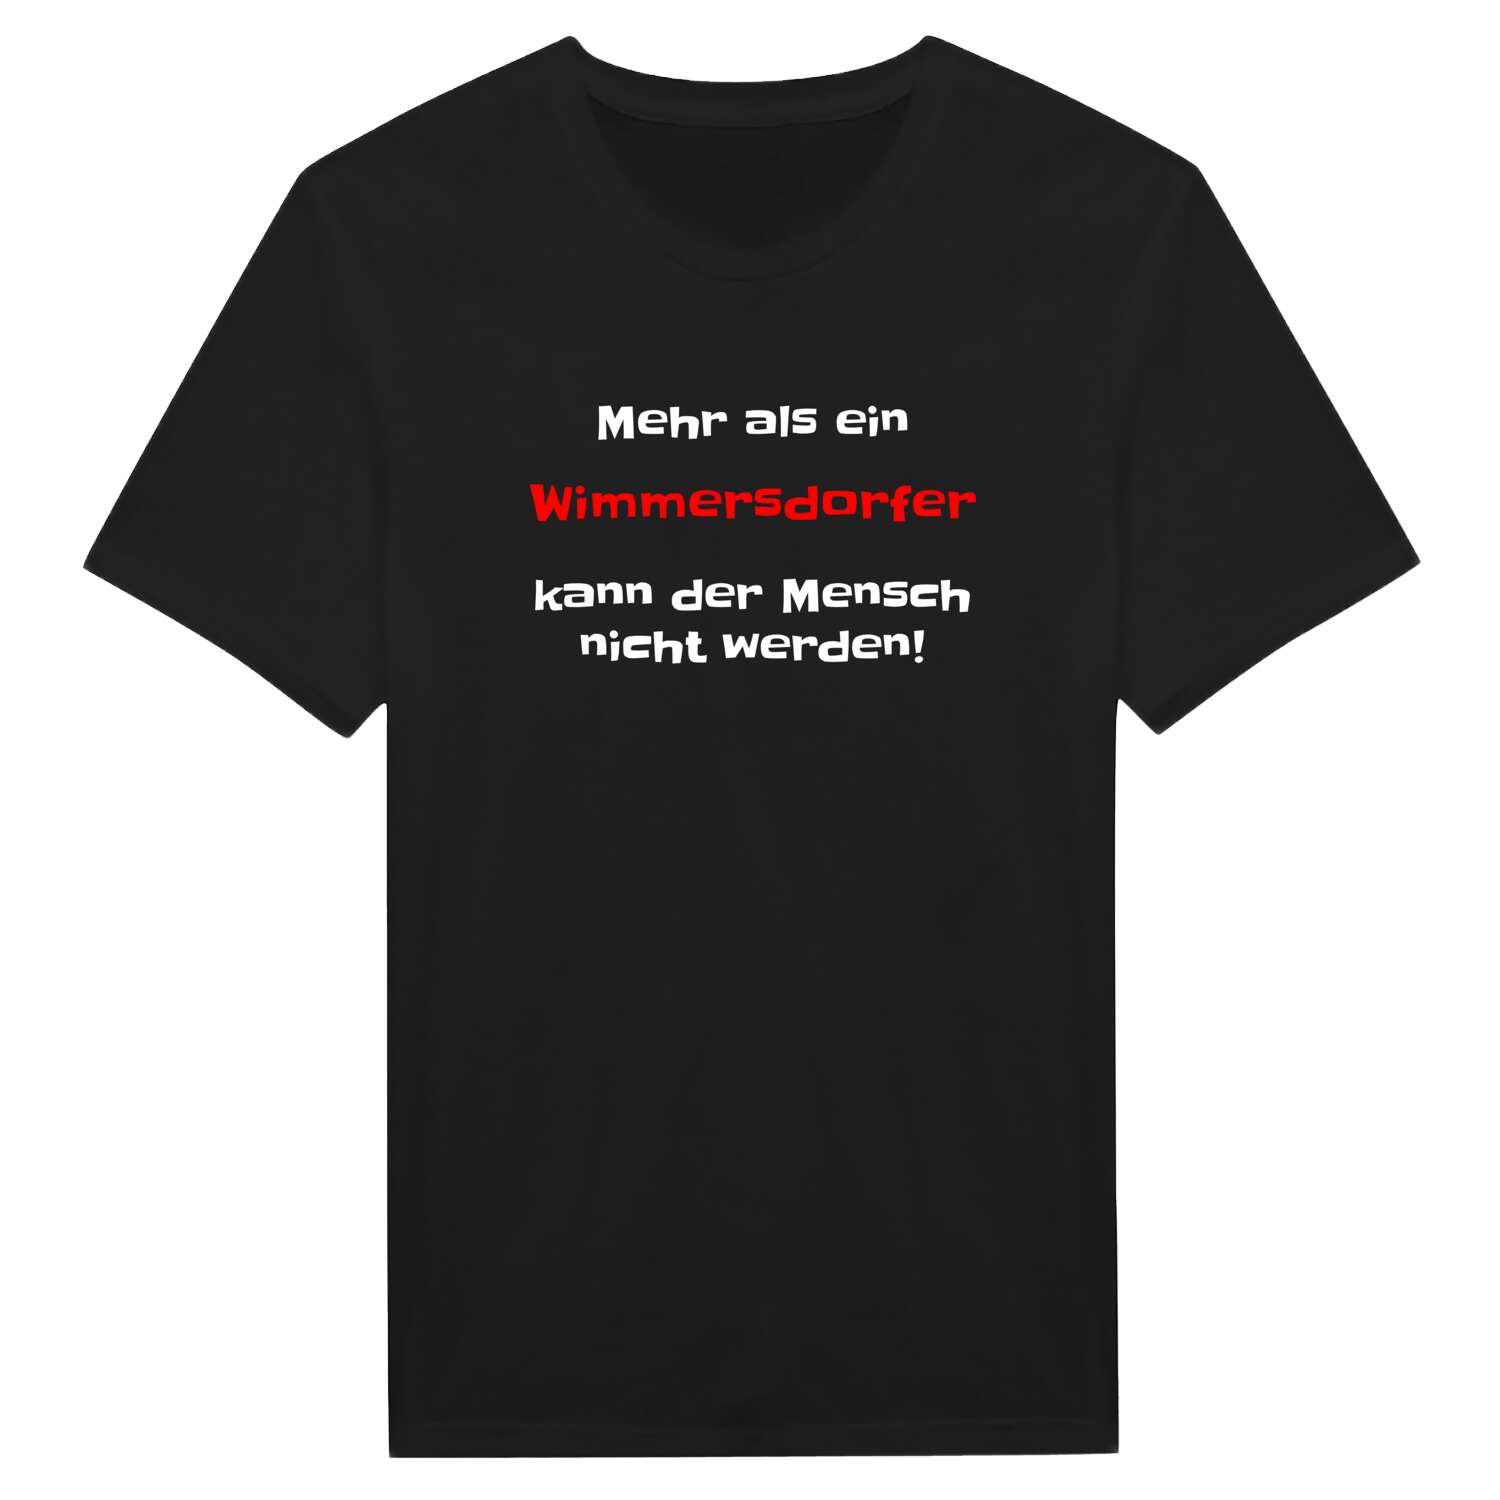 Wimmersdorf T-Shirt »Mehr als ein«